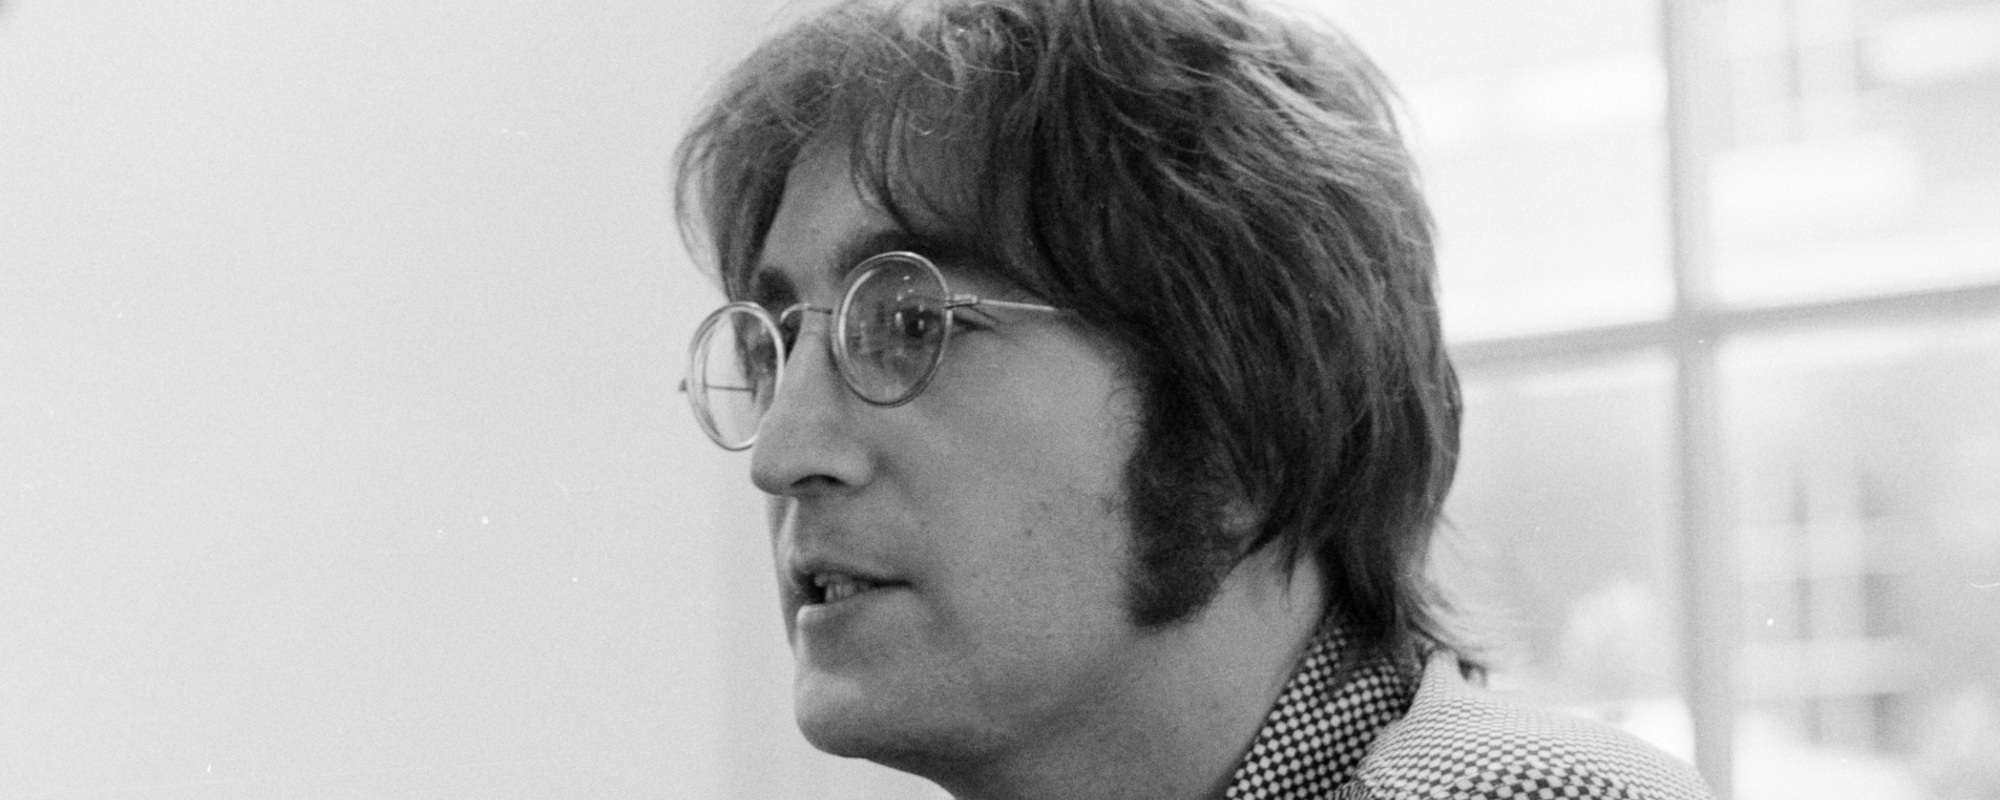 John Lennon’s Killer, Mark David Chapman, Denied Parole For The 12th Time